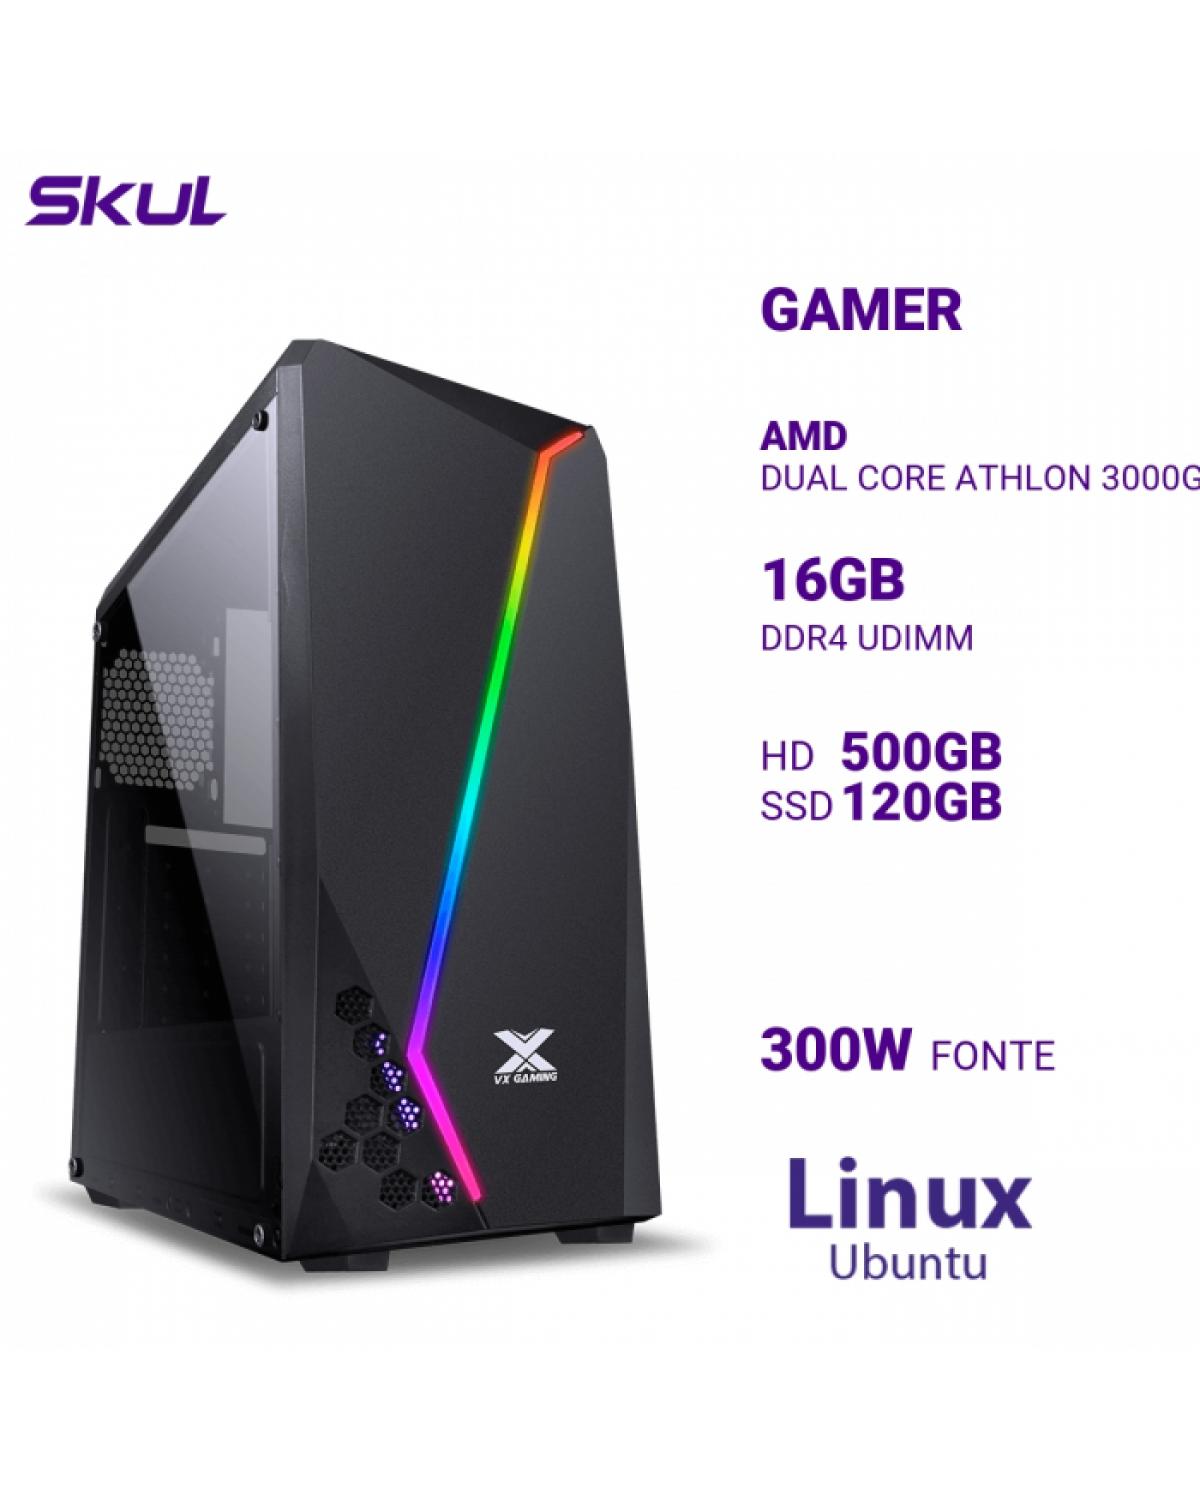 COMPUTADOR GAMER 1000 DUAL CORE ATHLON 3000G 3.50GHZ MEM 16GB DDR4 HD 500GB SSD 120GB FONTE 300W LINUX